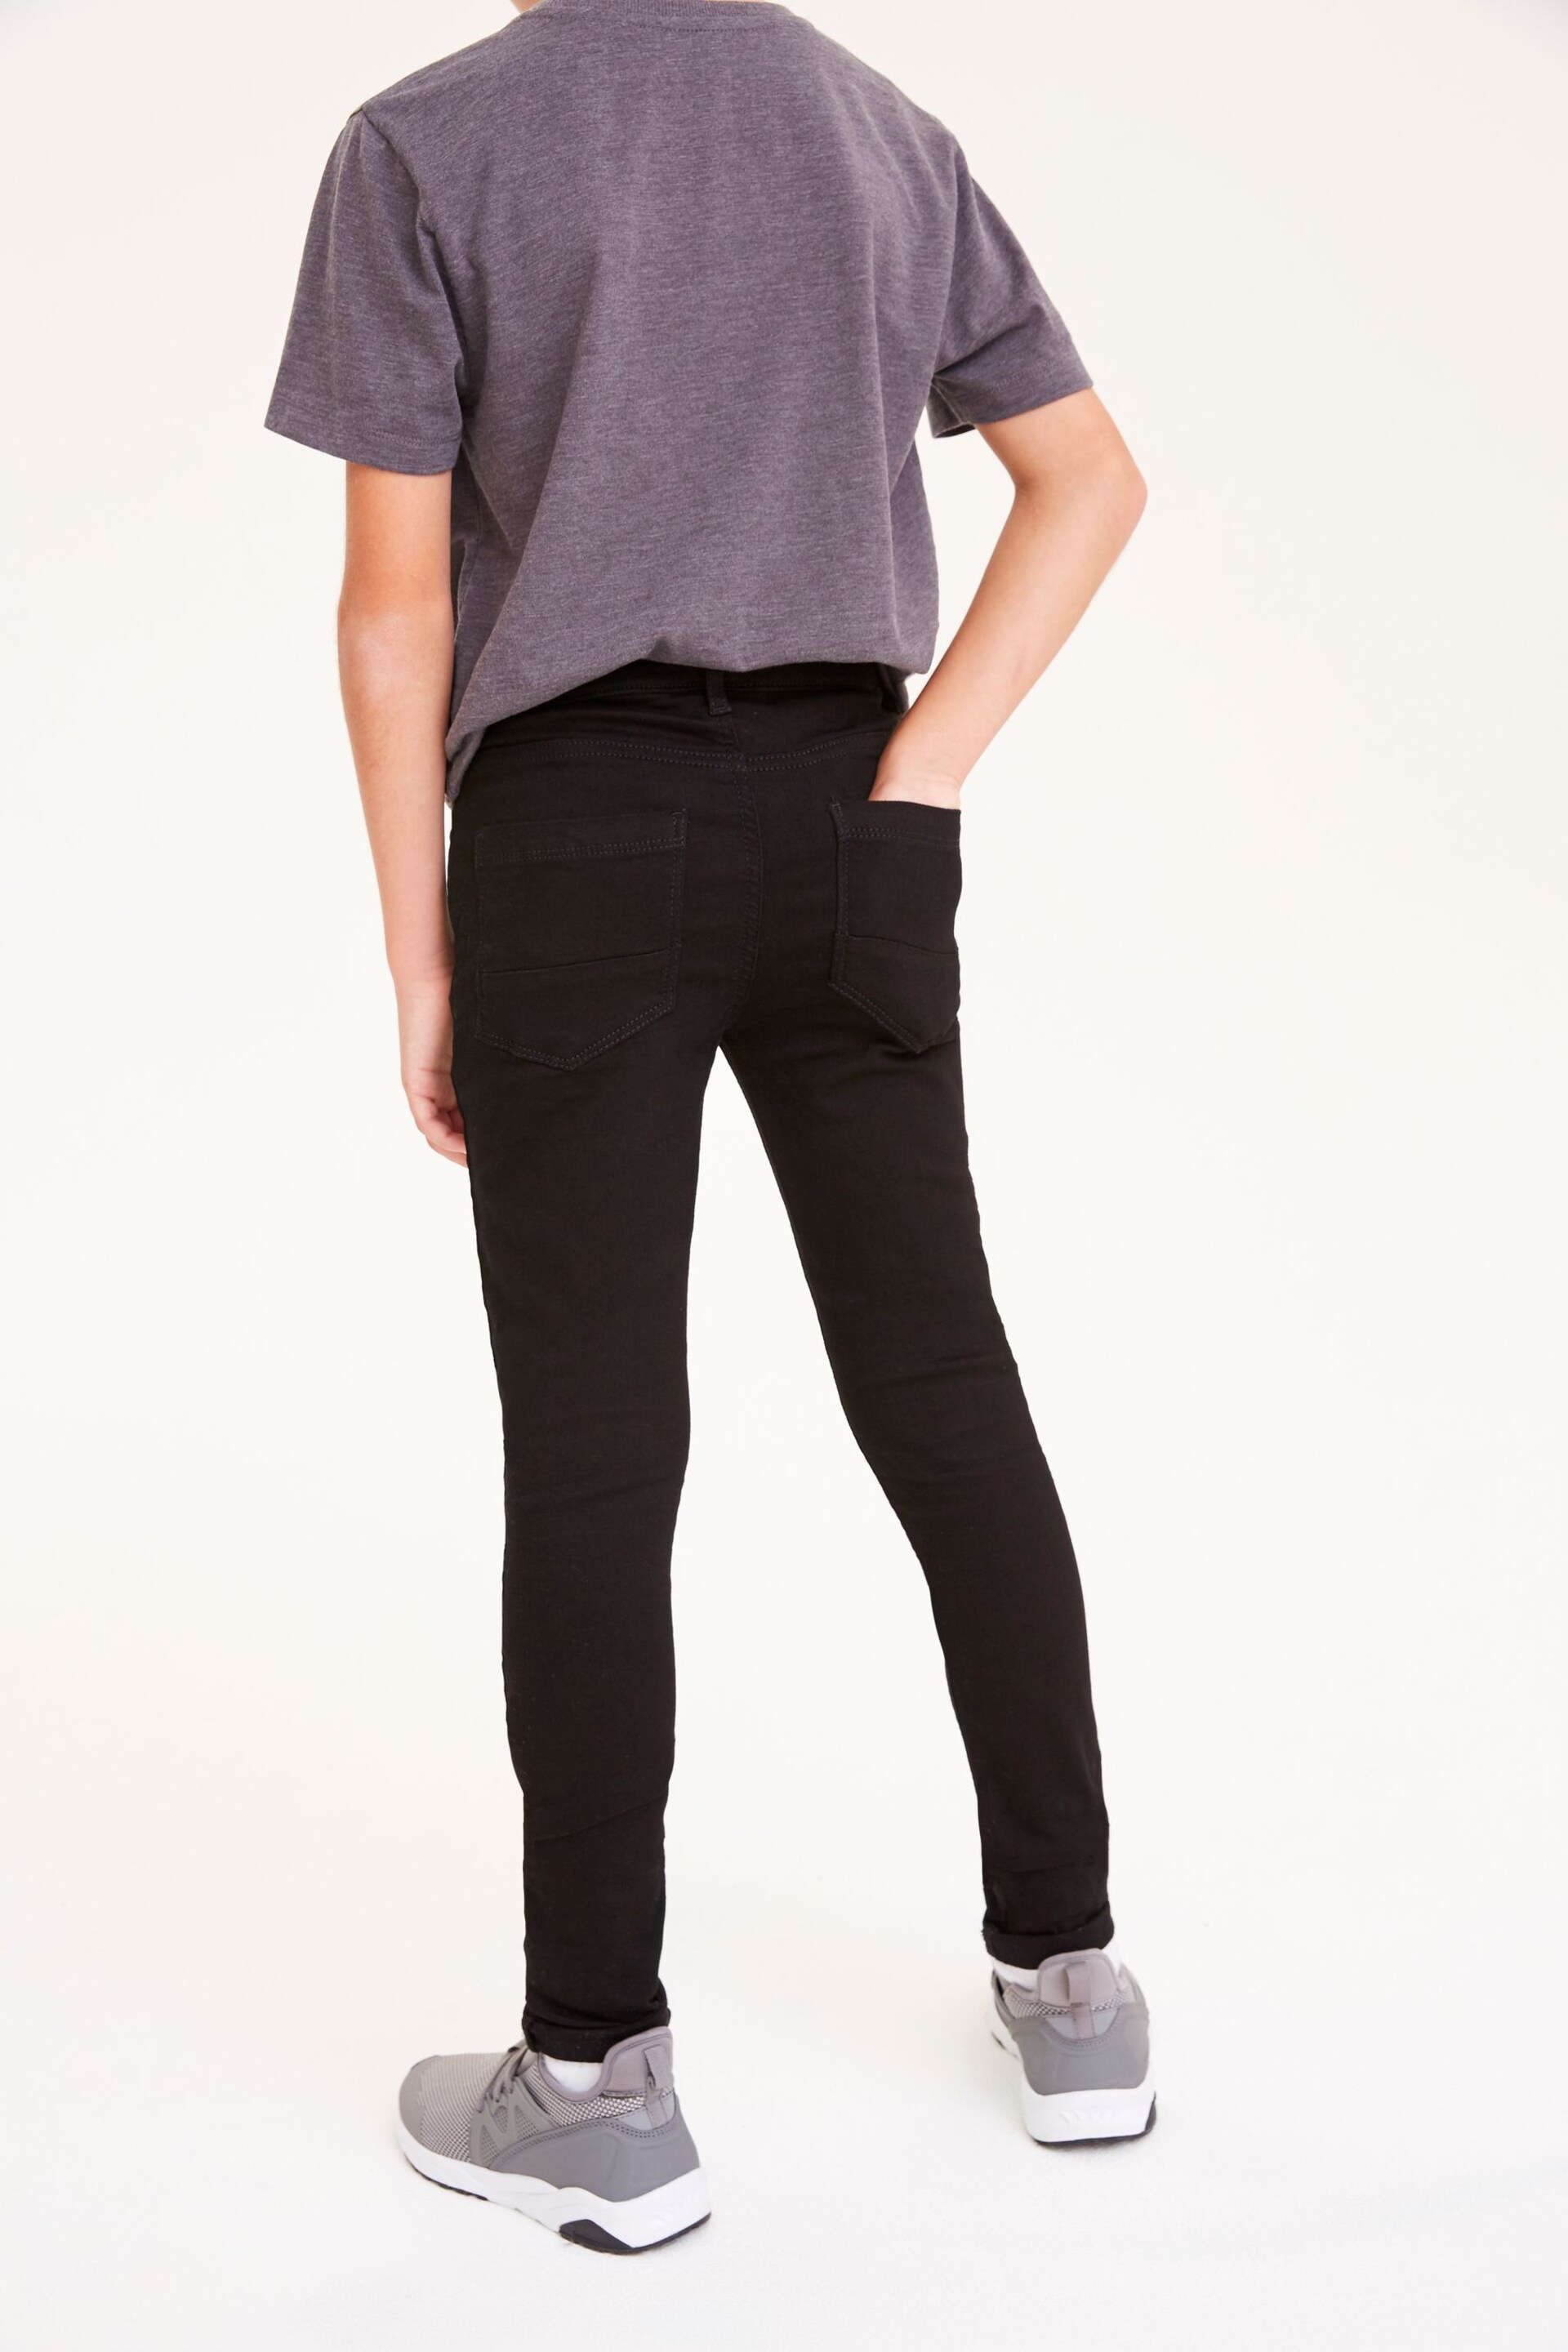 Black Denim Super Skinny Fit Mega Stretch Adjustable Waist Jeans (3-16yrs) - Image 2 of 6